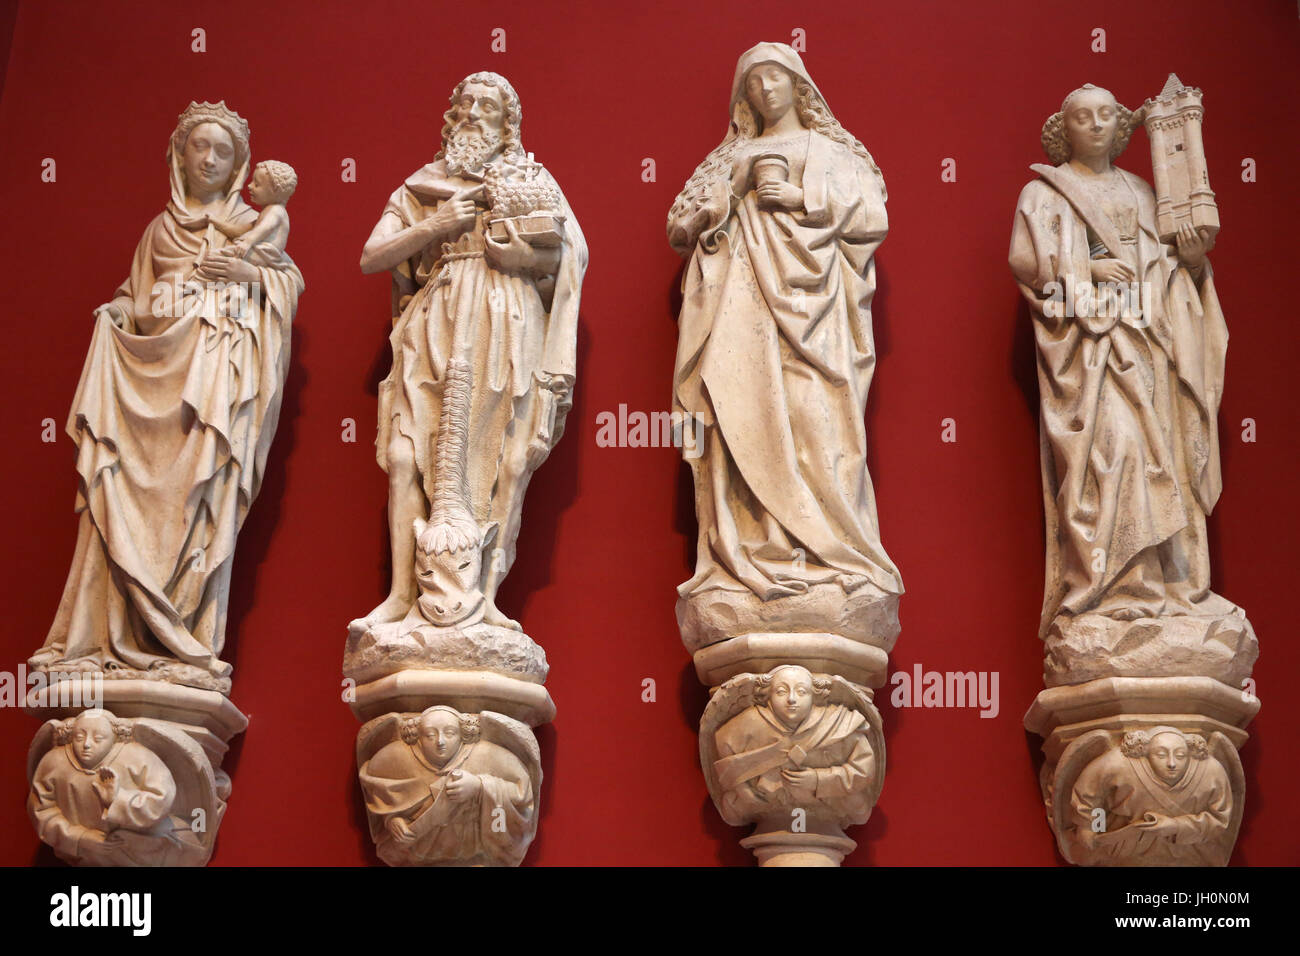 CitŽ de l'architecture et du patrimoine (Museum of architecture & heritage), Paris. Copies of the statues of the Chateaudun Sainte-Chapelle. France. Stock Photo